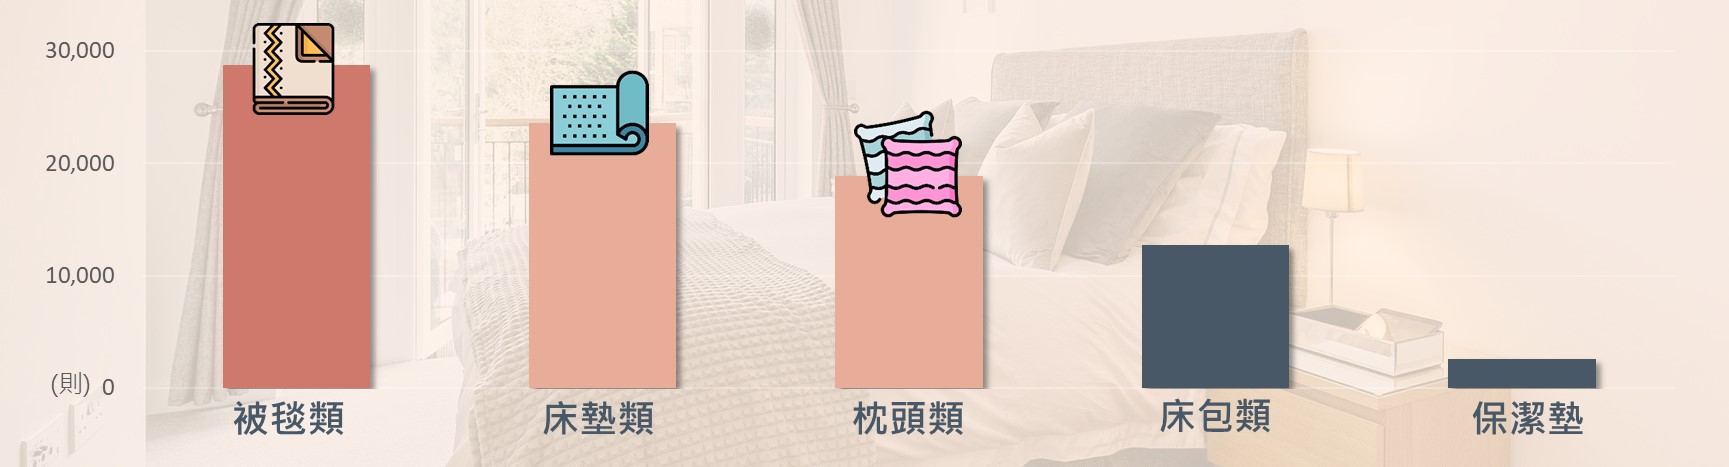 寢具商品類別網路聲量排行